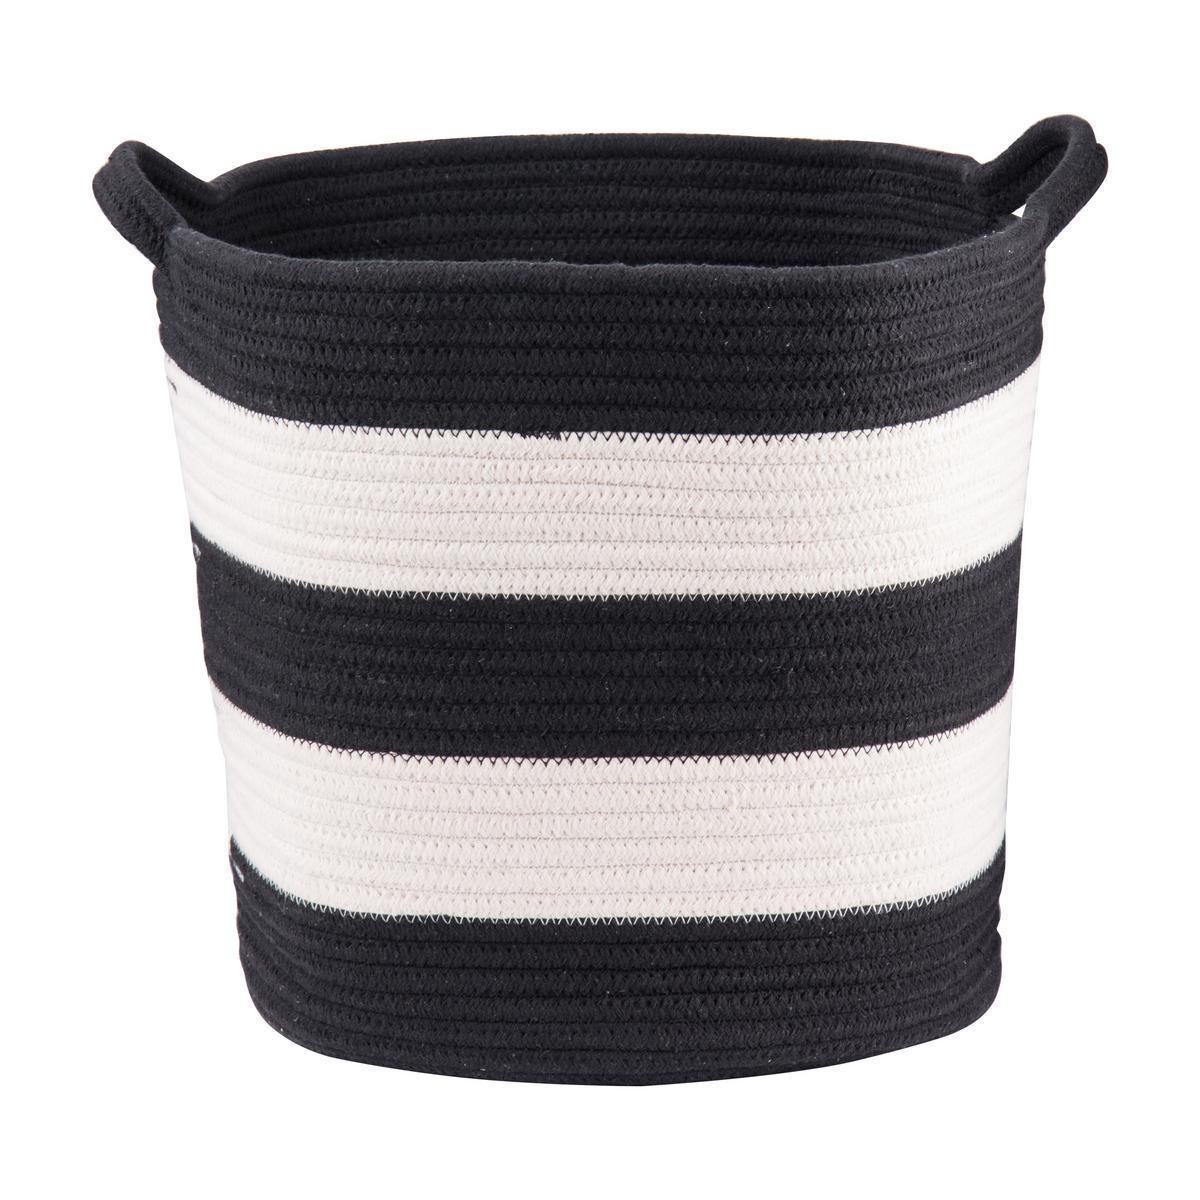 Panier rond - Corde de coton - Ø 36 x H 32 cm - Noir et blanc